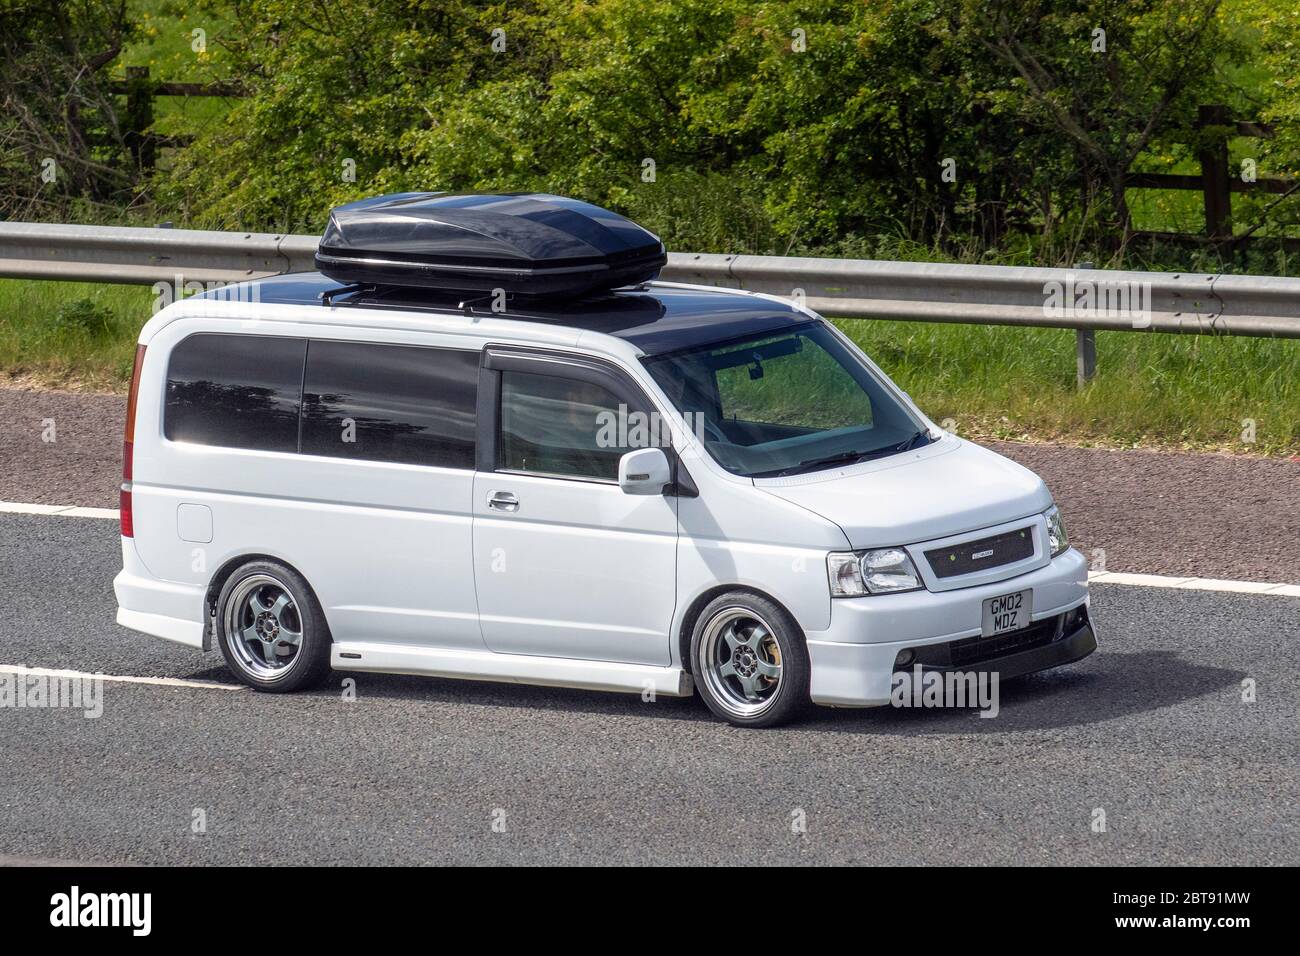 honda stepwagon camper vans for sale uk